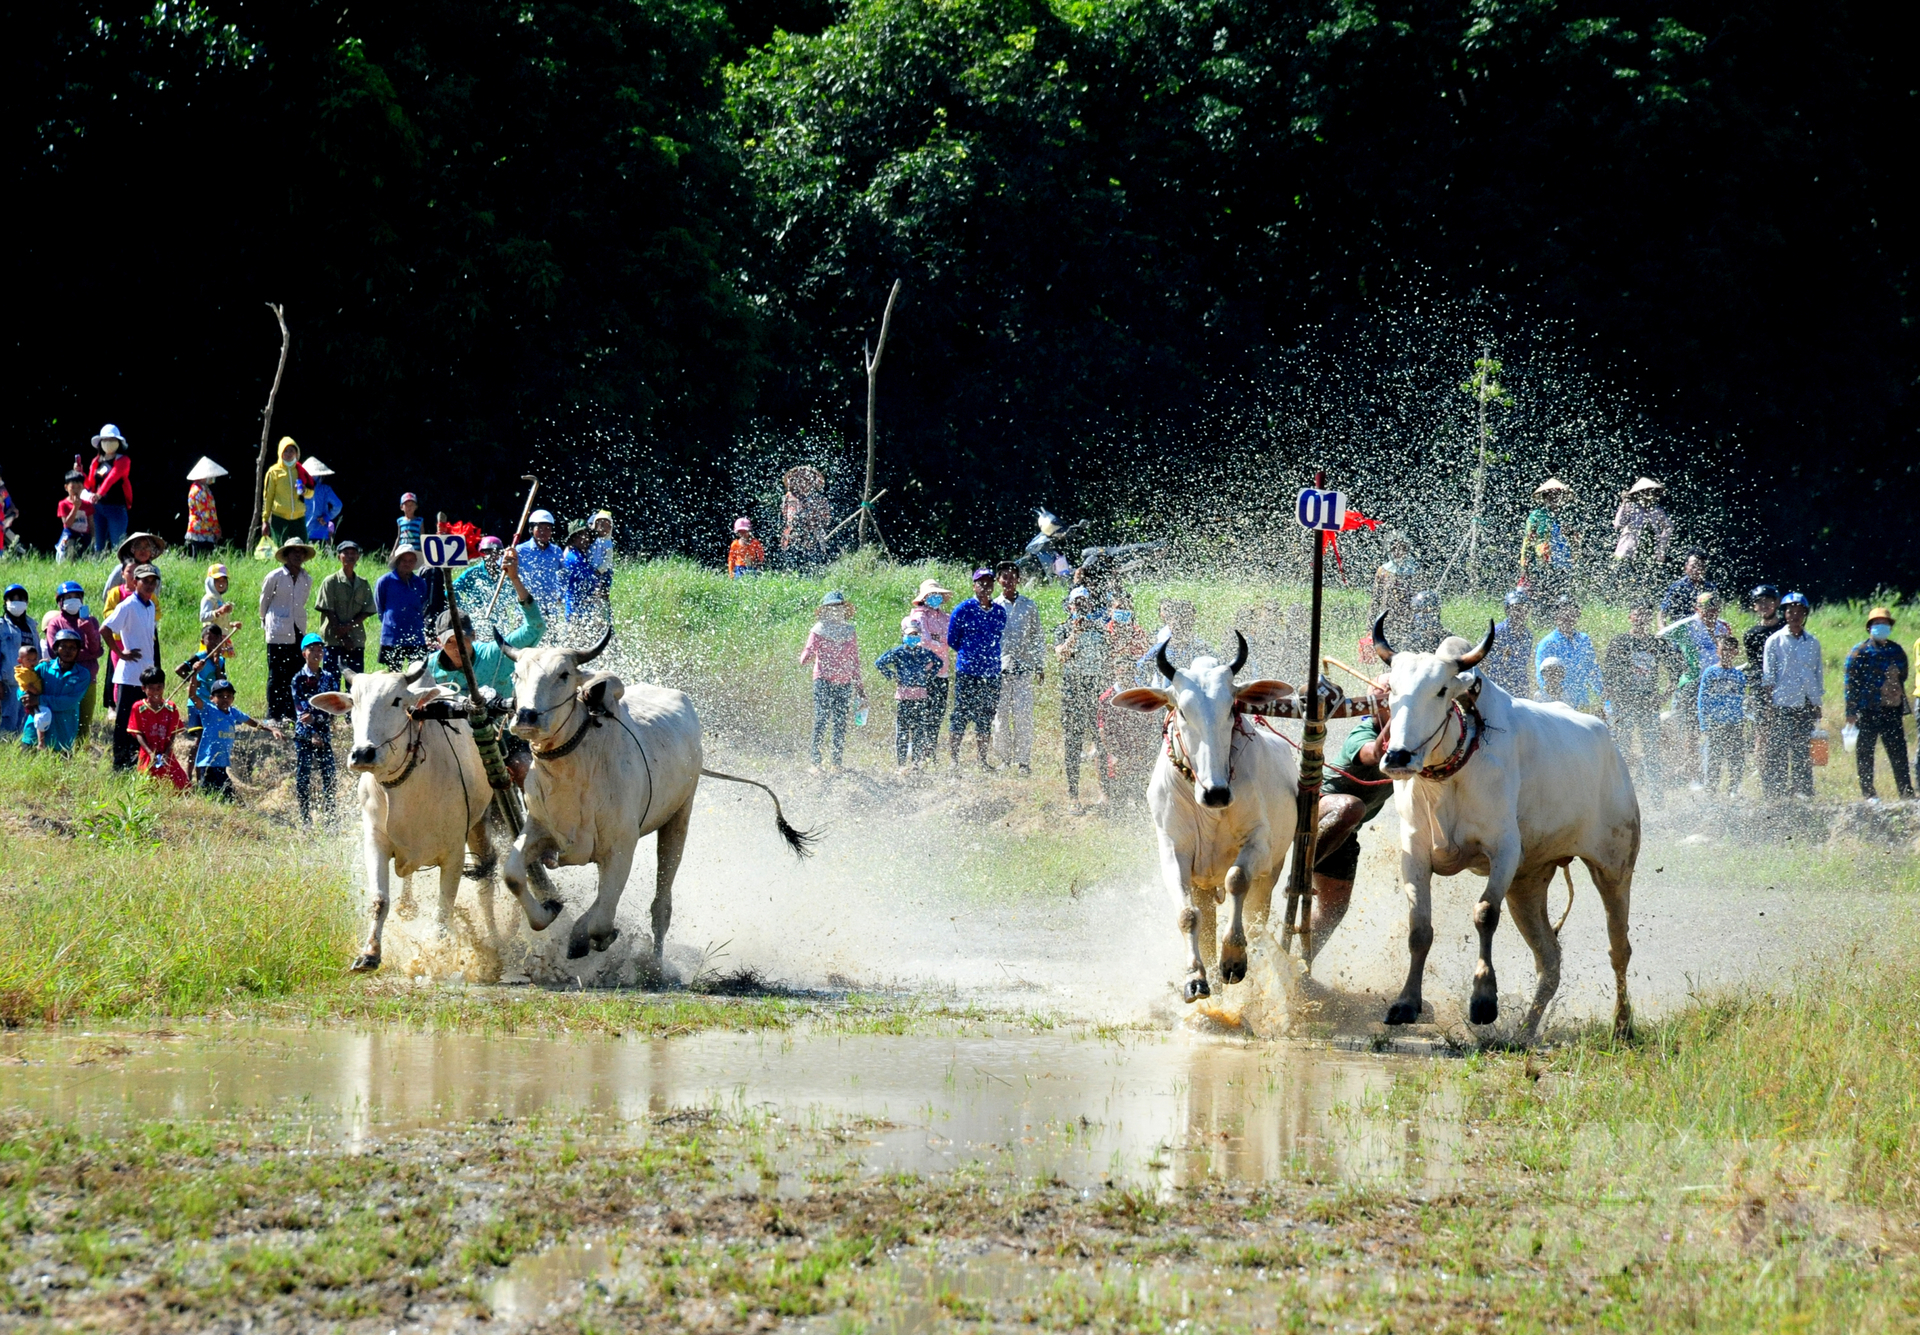 Đồng thời tạo không khí vui tươi phấn khởi, nhân dịp lễ Sene Dolta của đồng bào dân tộc Khmer, góp phần quảng bá hình ảnh đua bò Bảy Núi đến đông đảo người dân trong nước và thế giới.